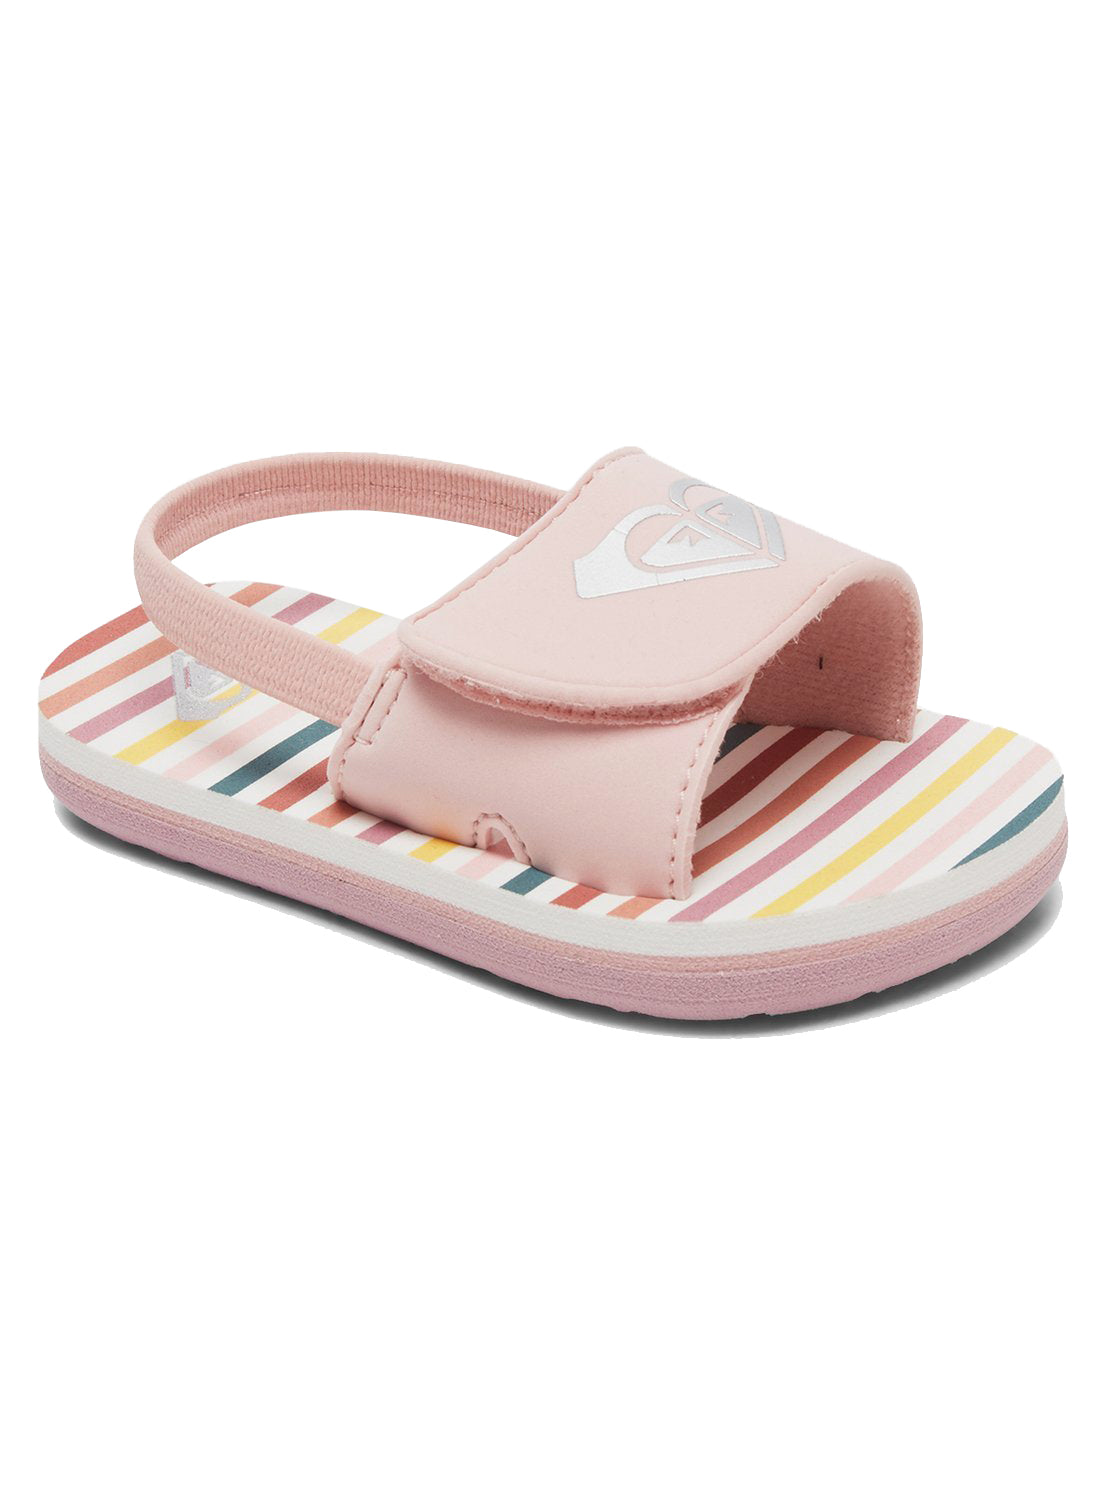 Roxy Finn Toddler Sandal PW0-Pink-White 5 C